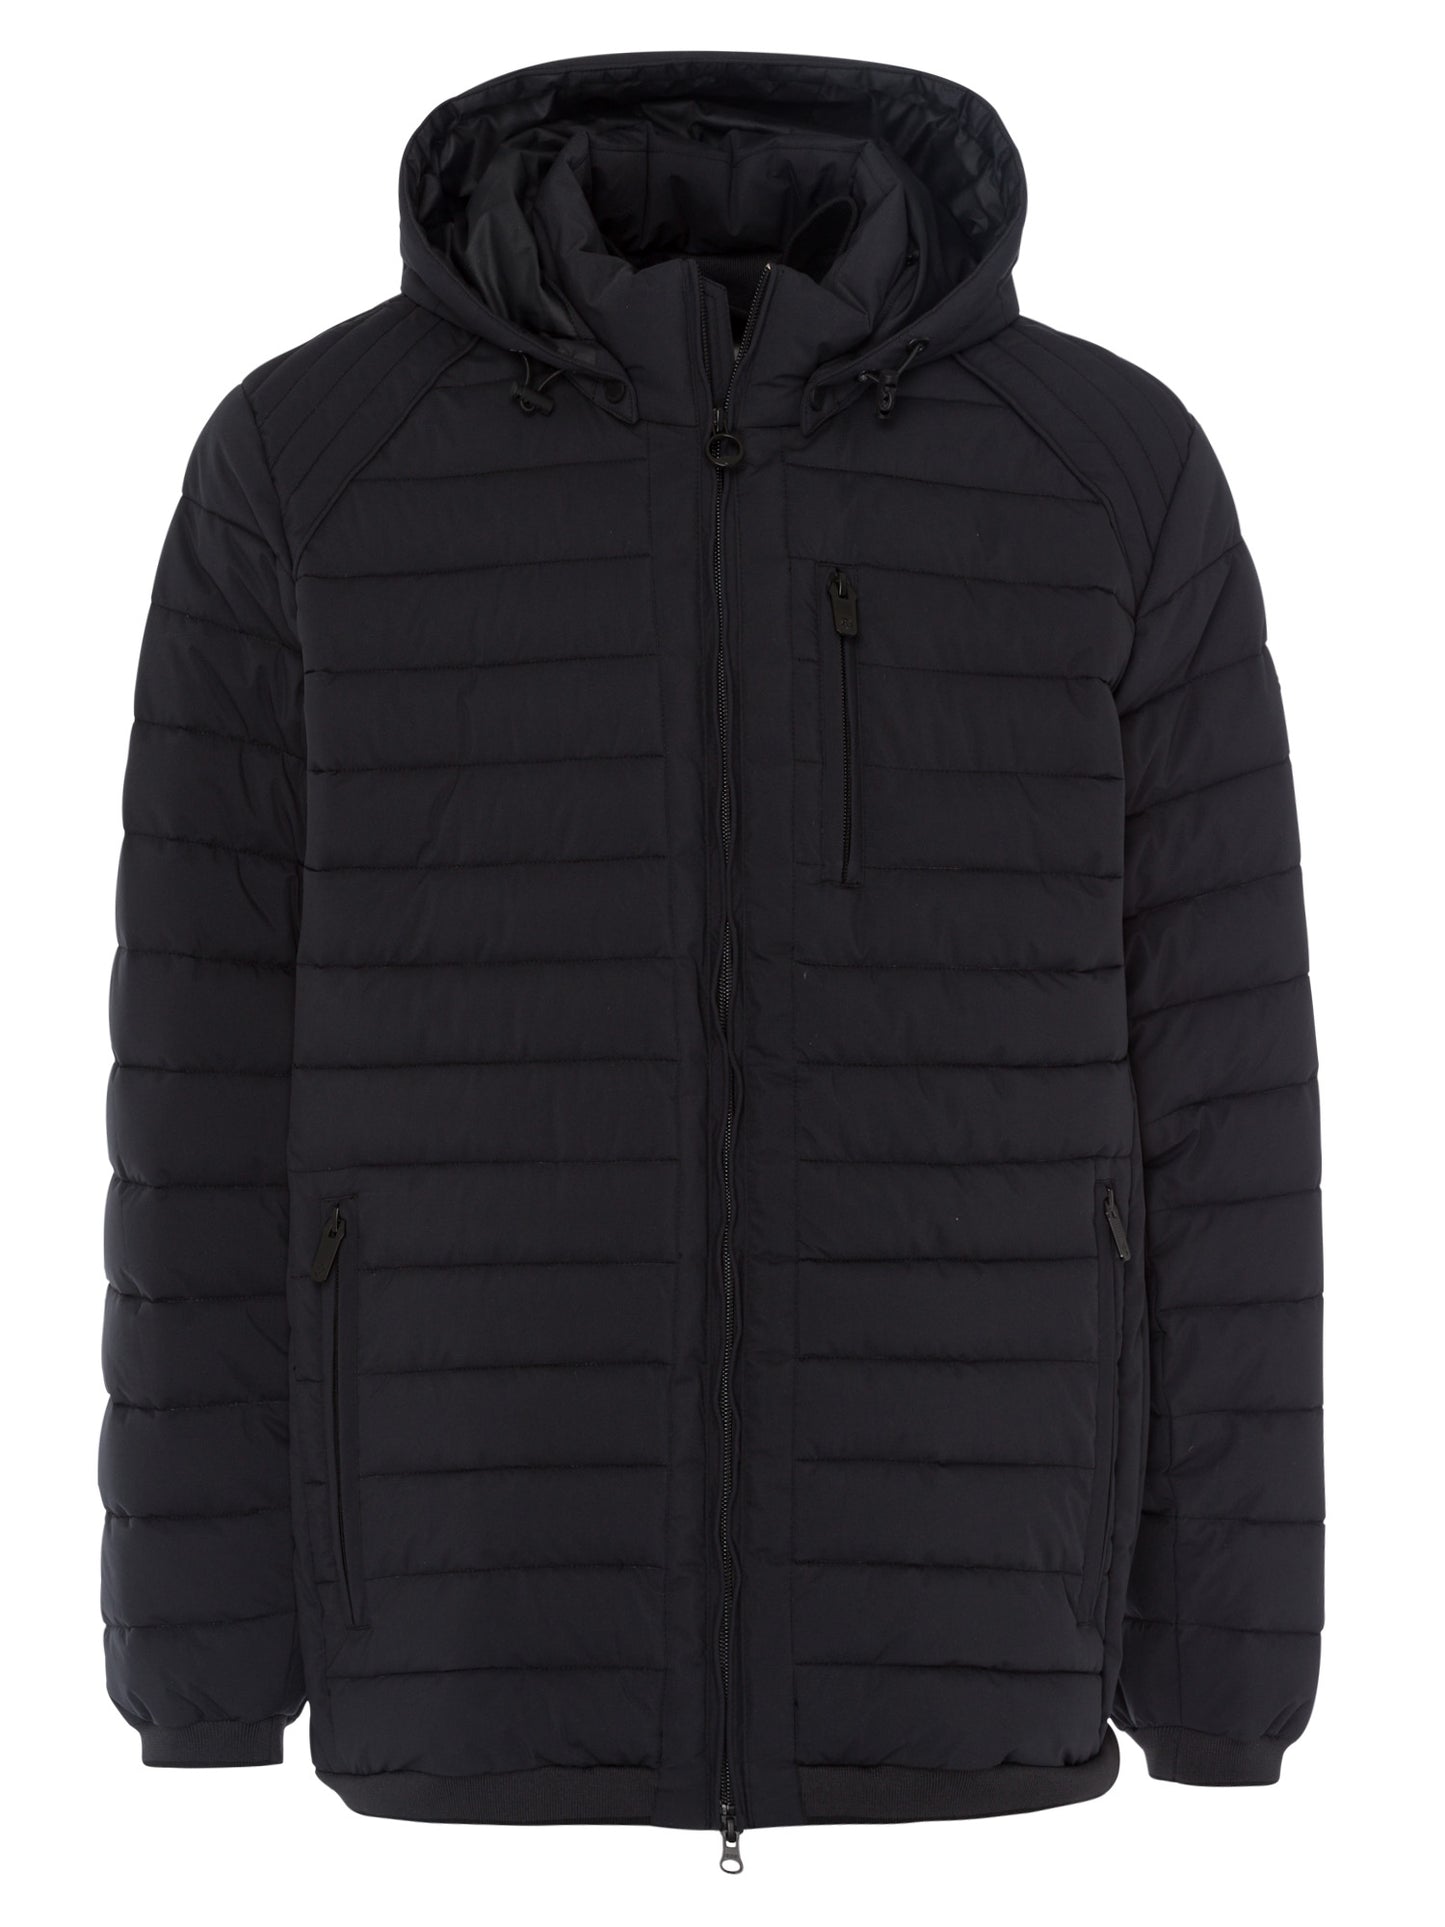 Men's regular quilted winter jacket in black